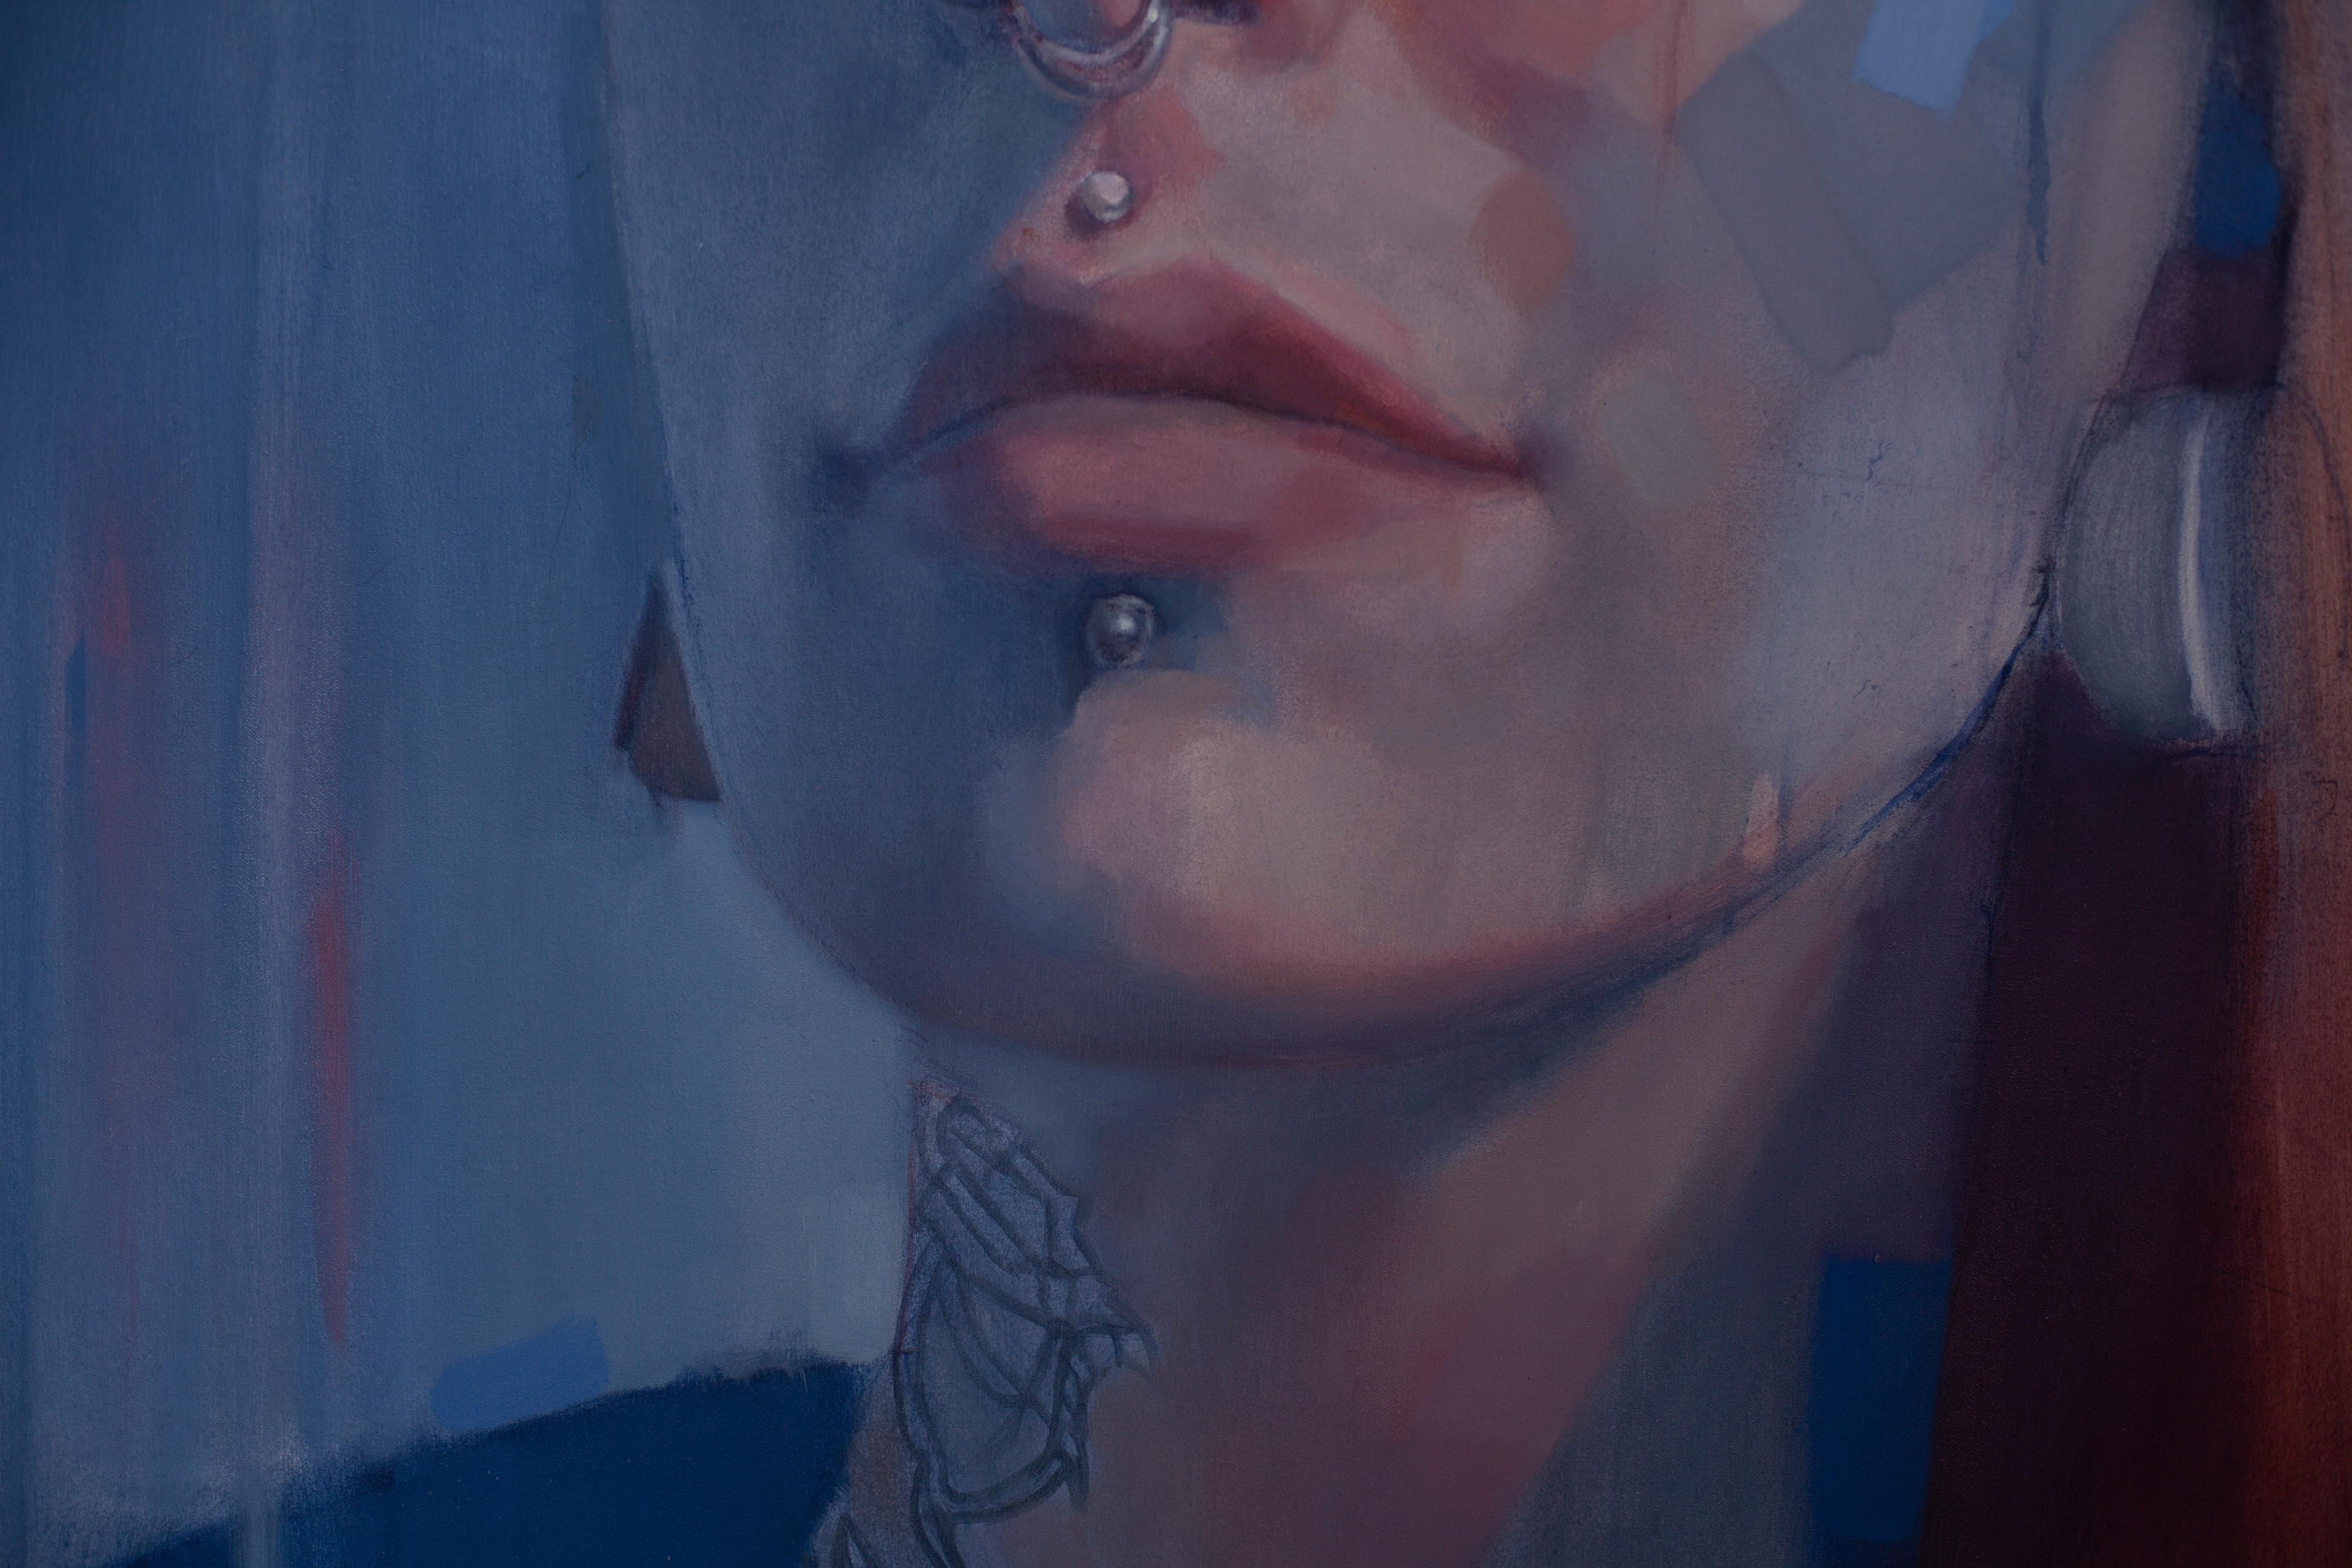 blue portrait painting